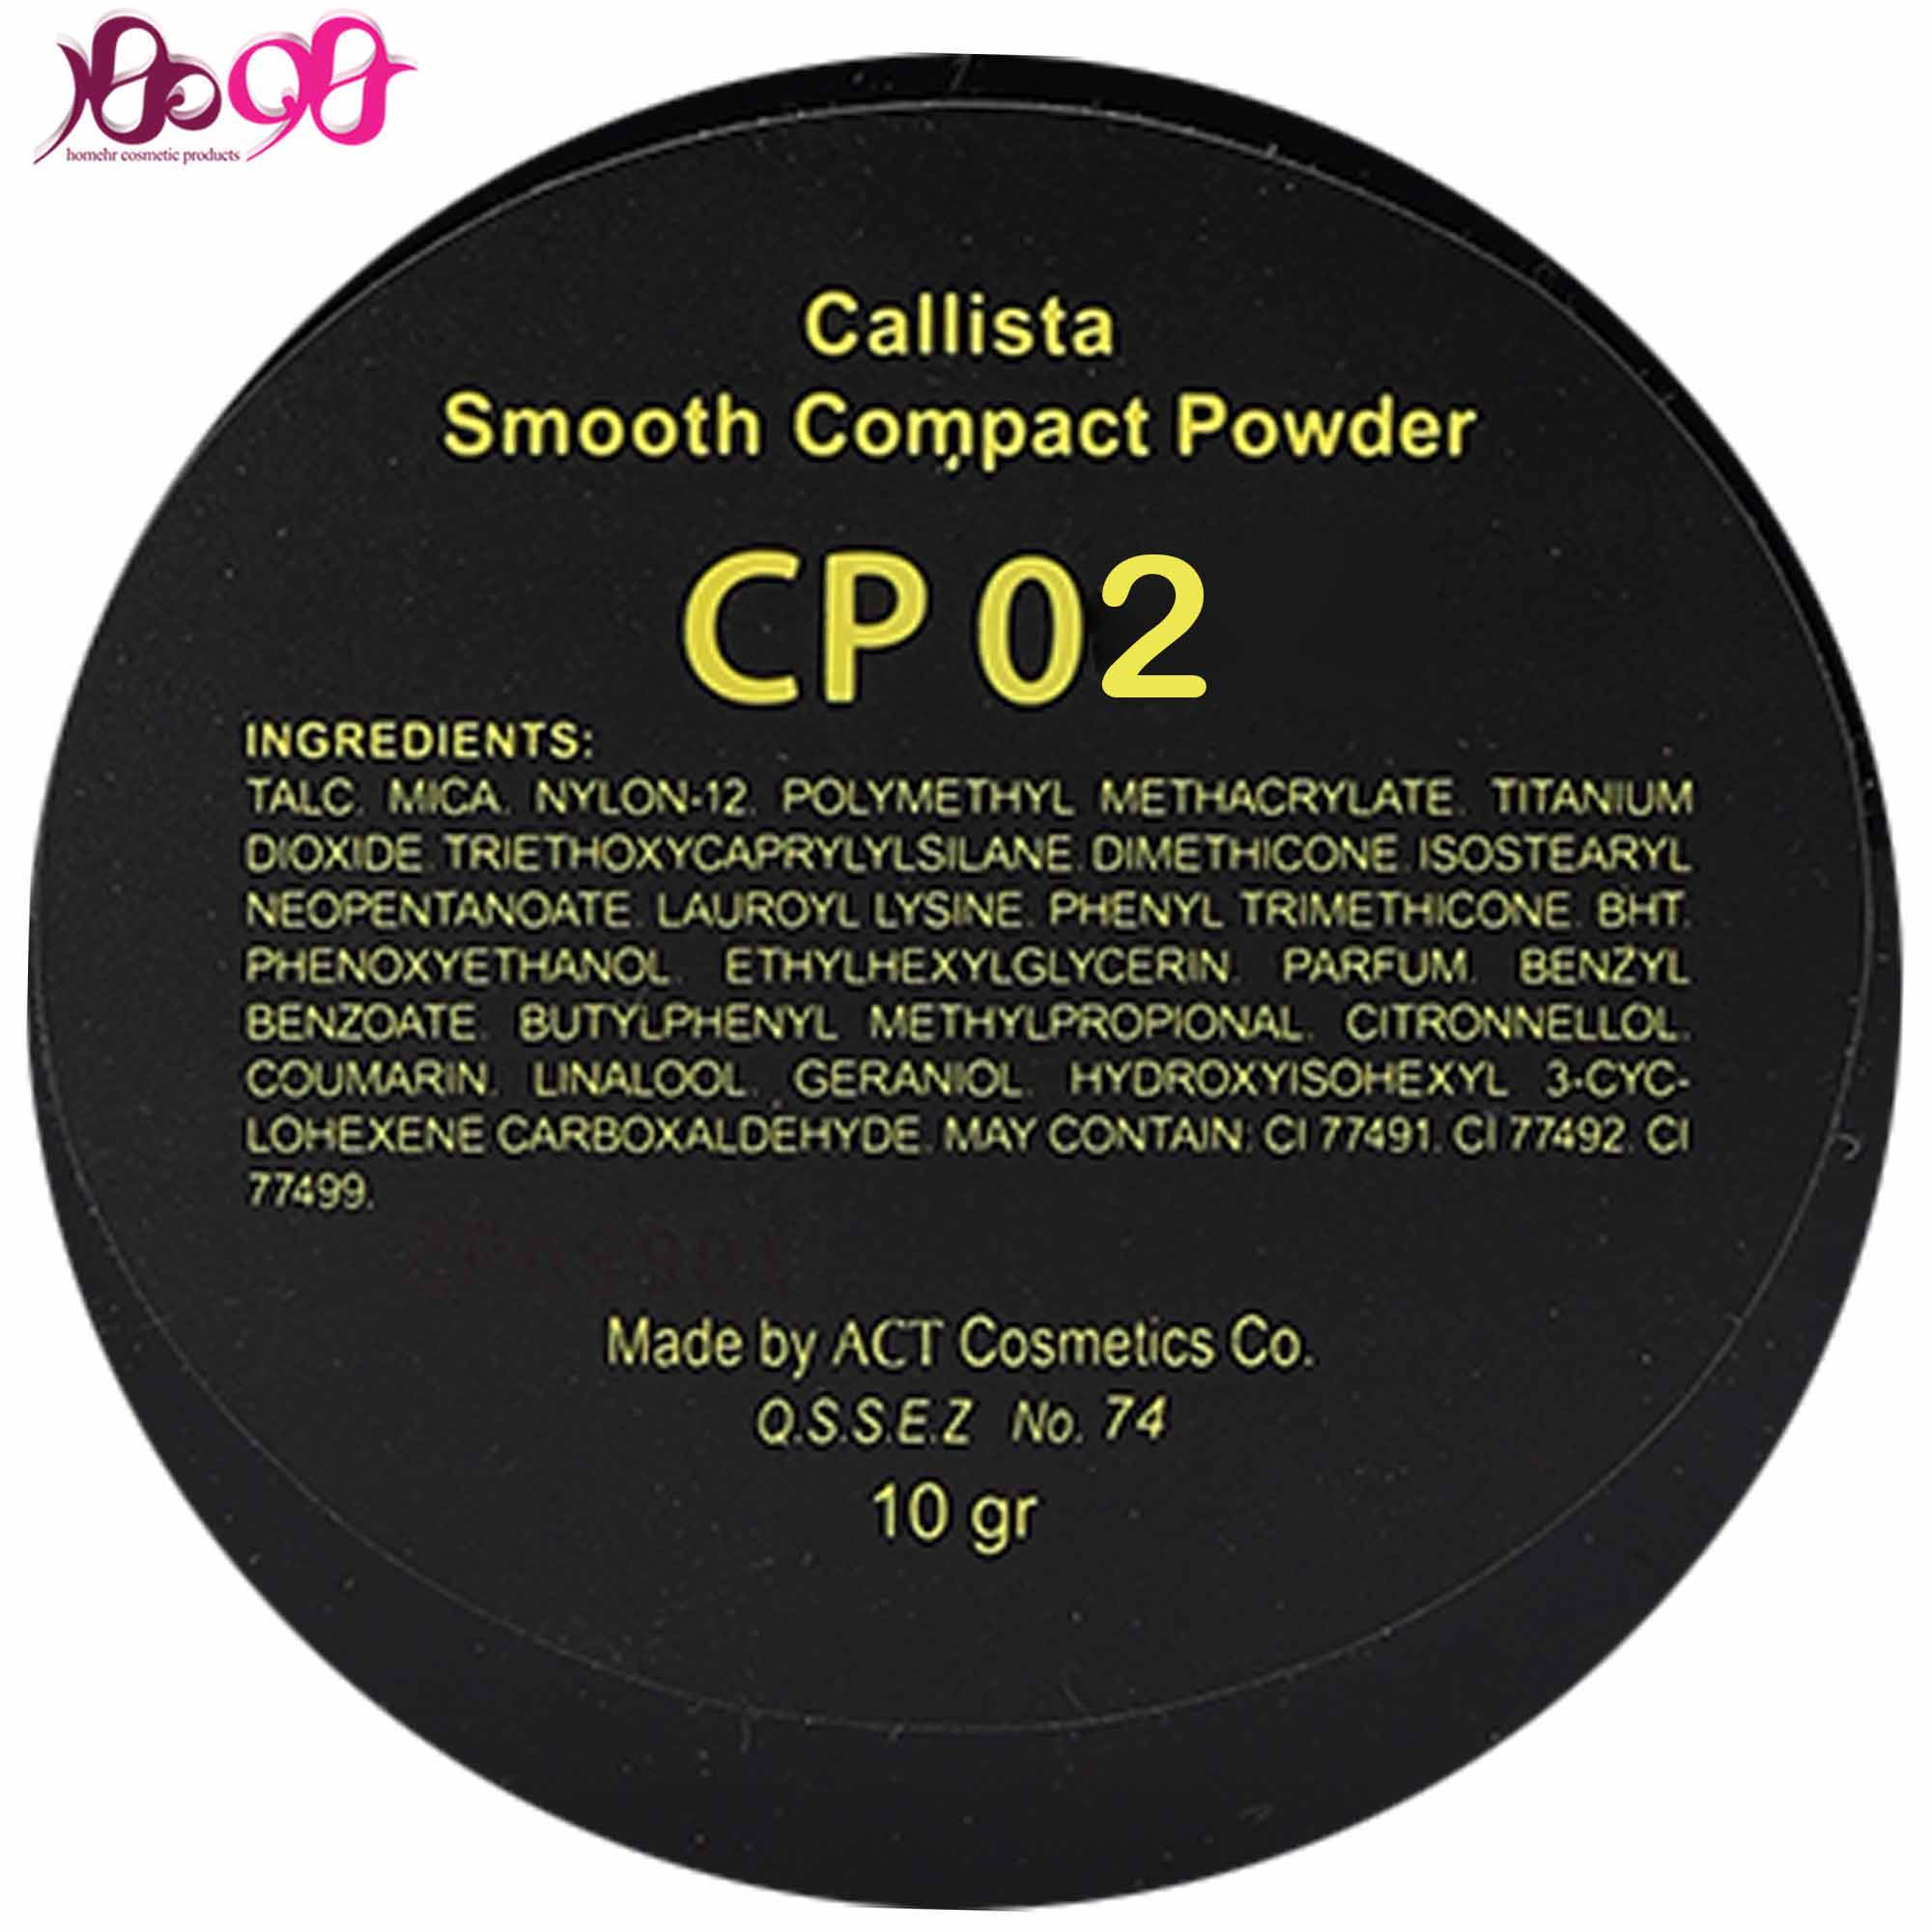 پنکيک-CP02-کاليستا-Callista